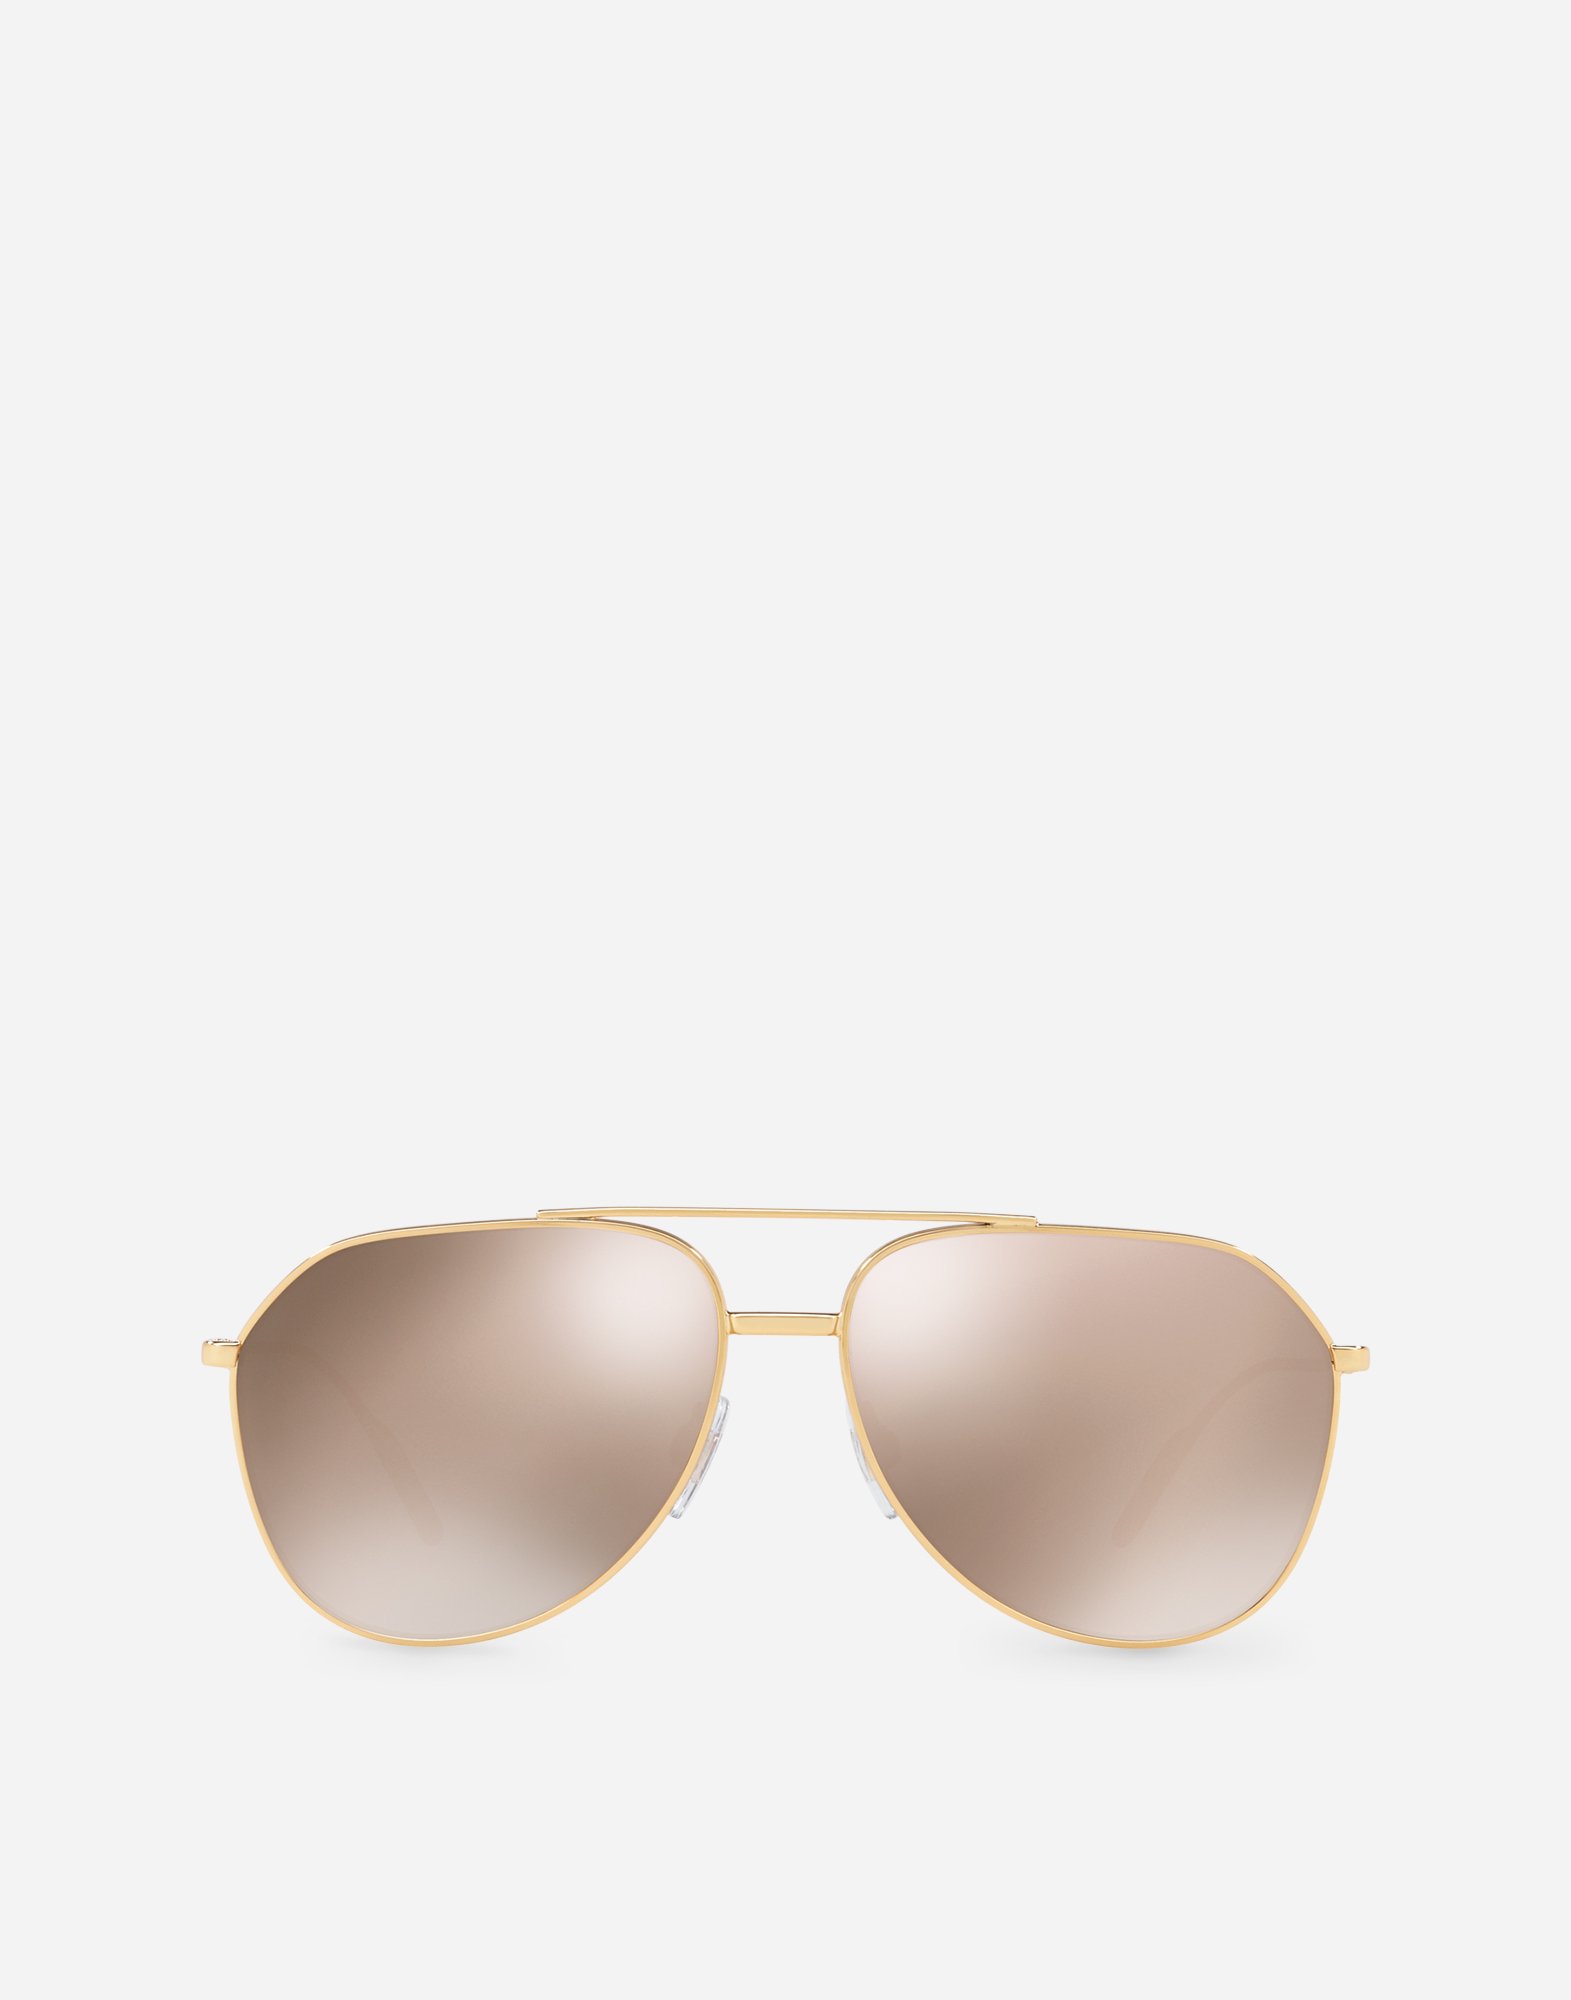 dolce gabbana sunglasses gold